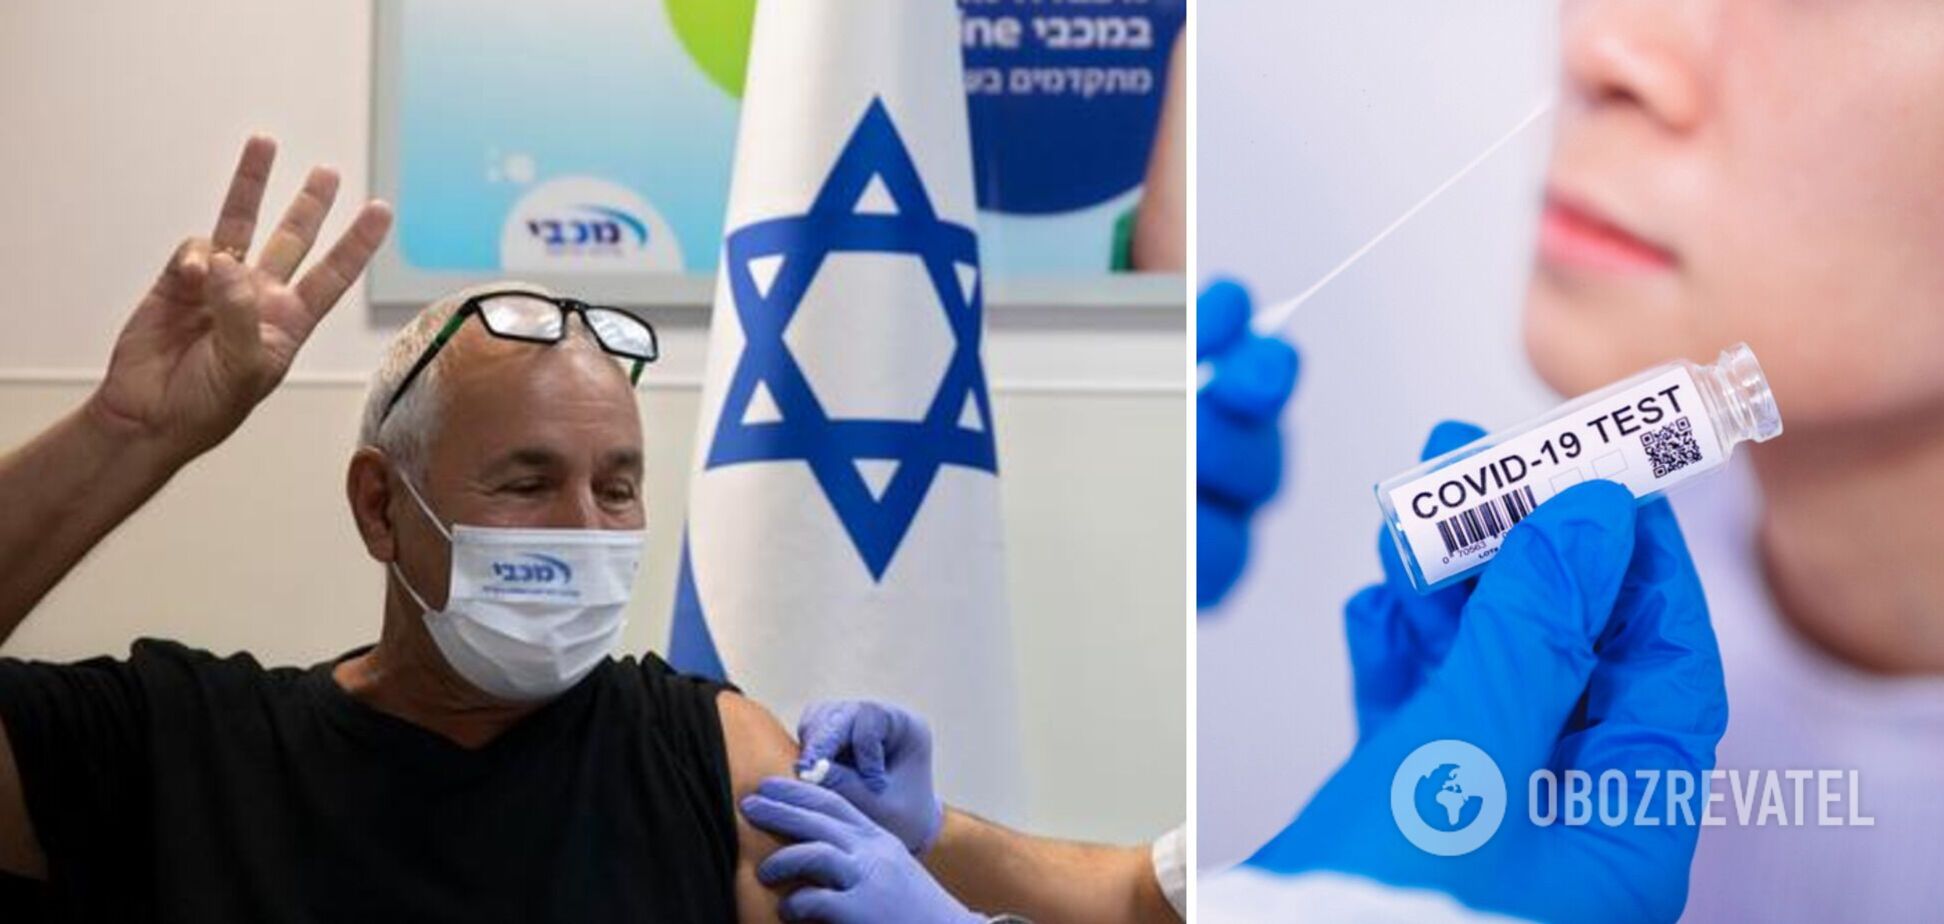 Бустерная вакцинация против COVID-19 необходима уже через 5 месяцев: что узнали израильские ученые